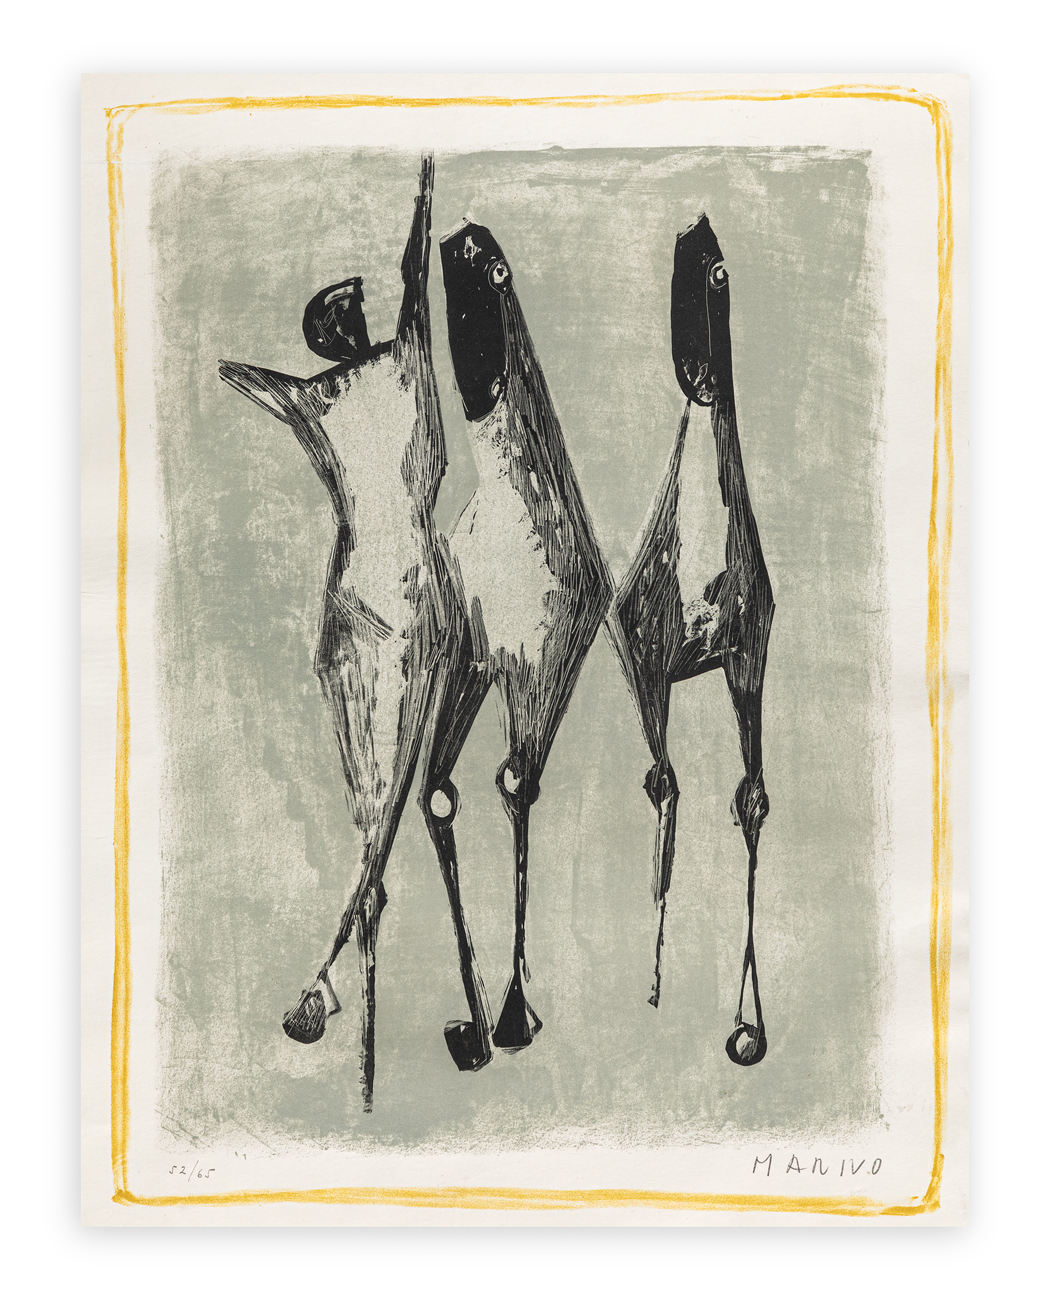 MARINO MARINI (1901-1980) - Giocoliere e cavalli, sfondo verde, bordo giallo, 1952